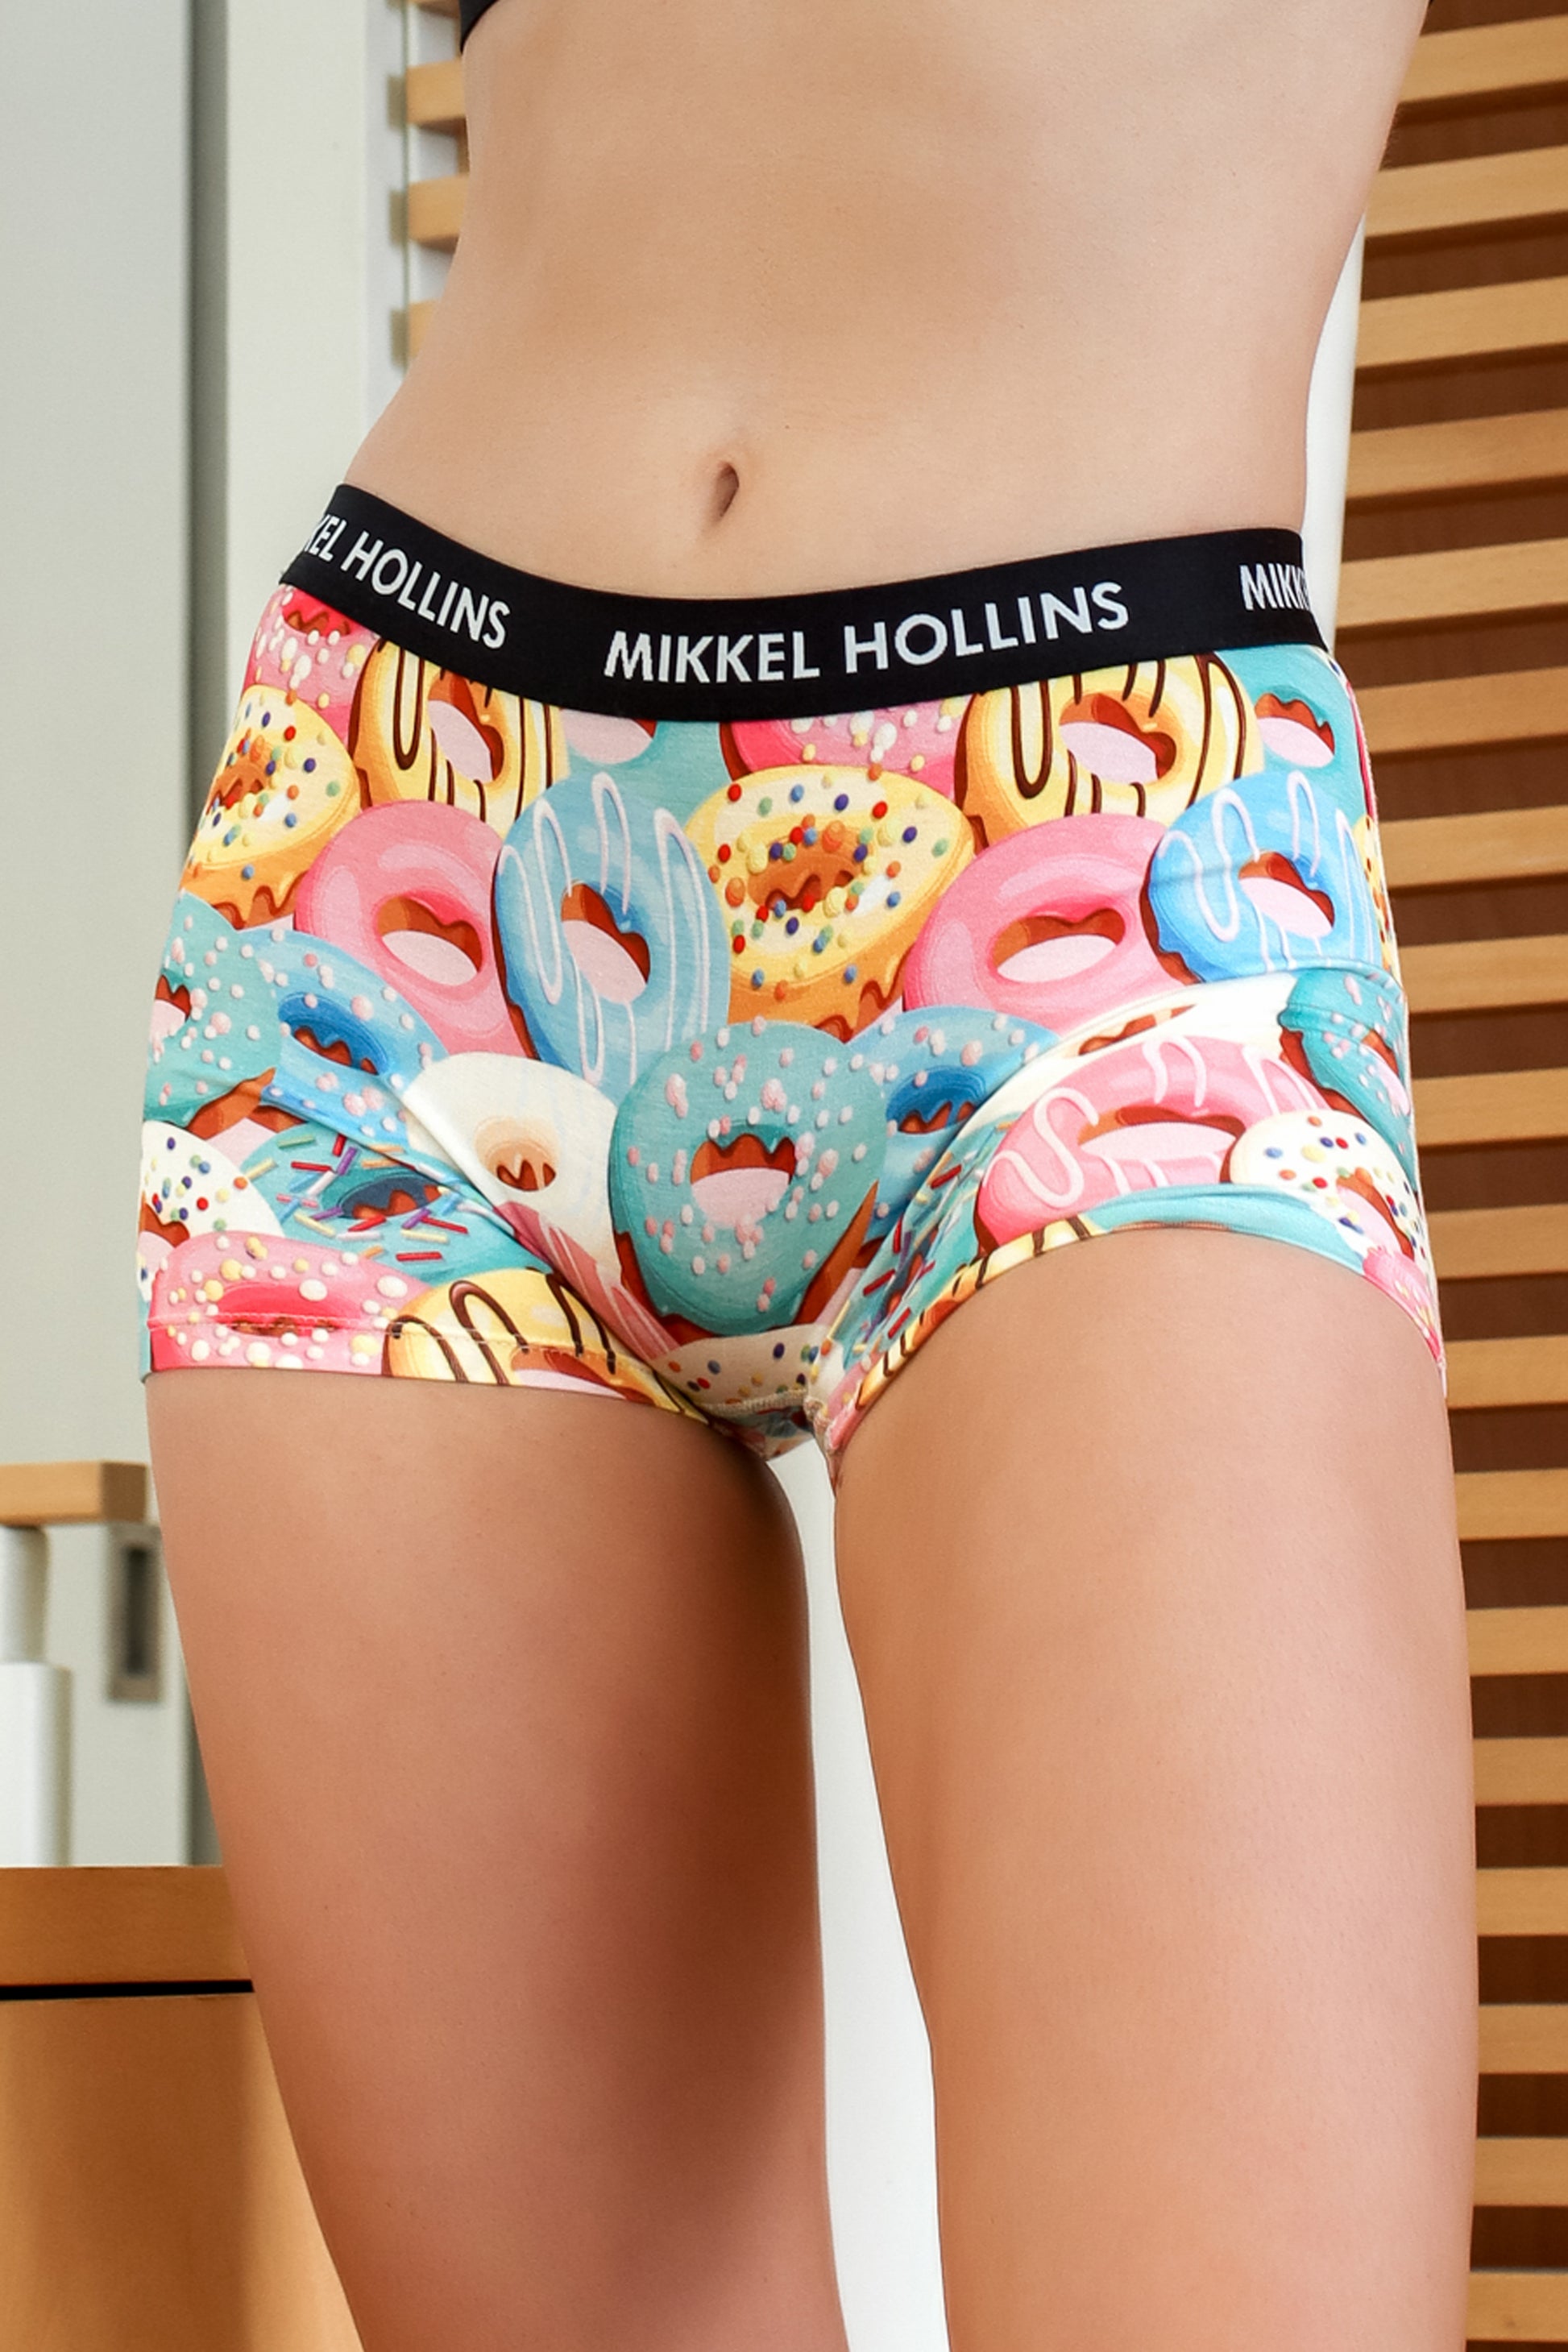 Donuts Design - Boy Shorts Underwear For Women